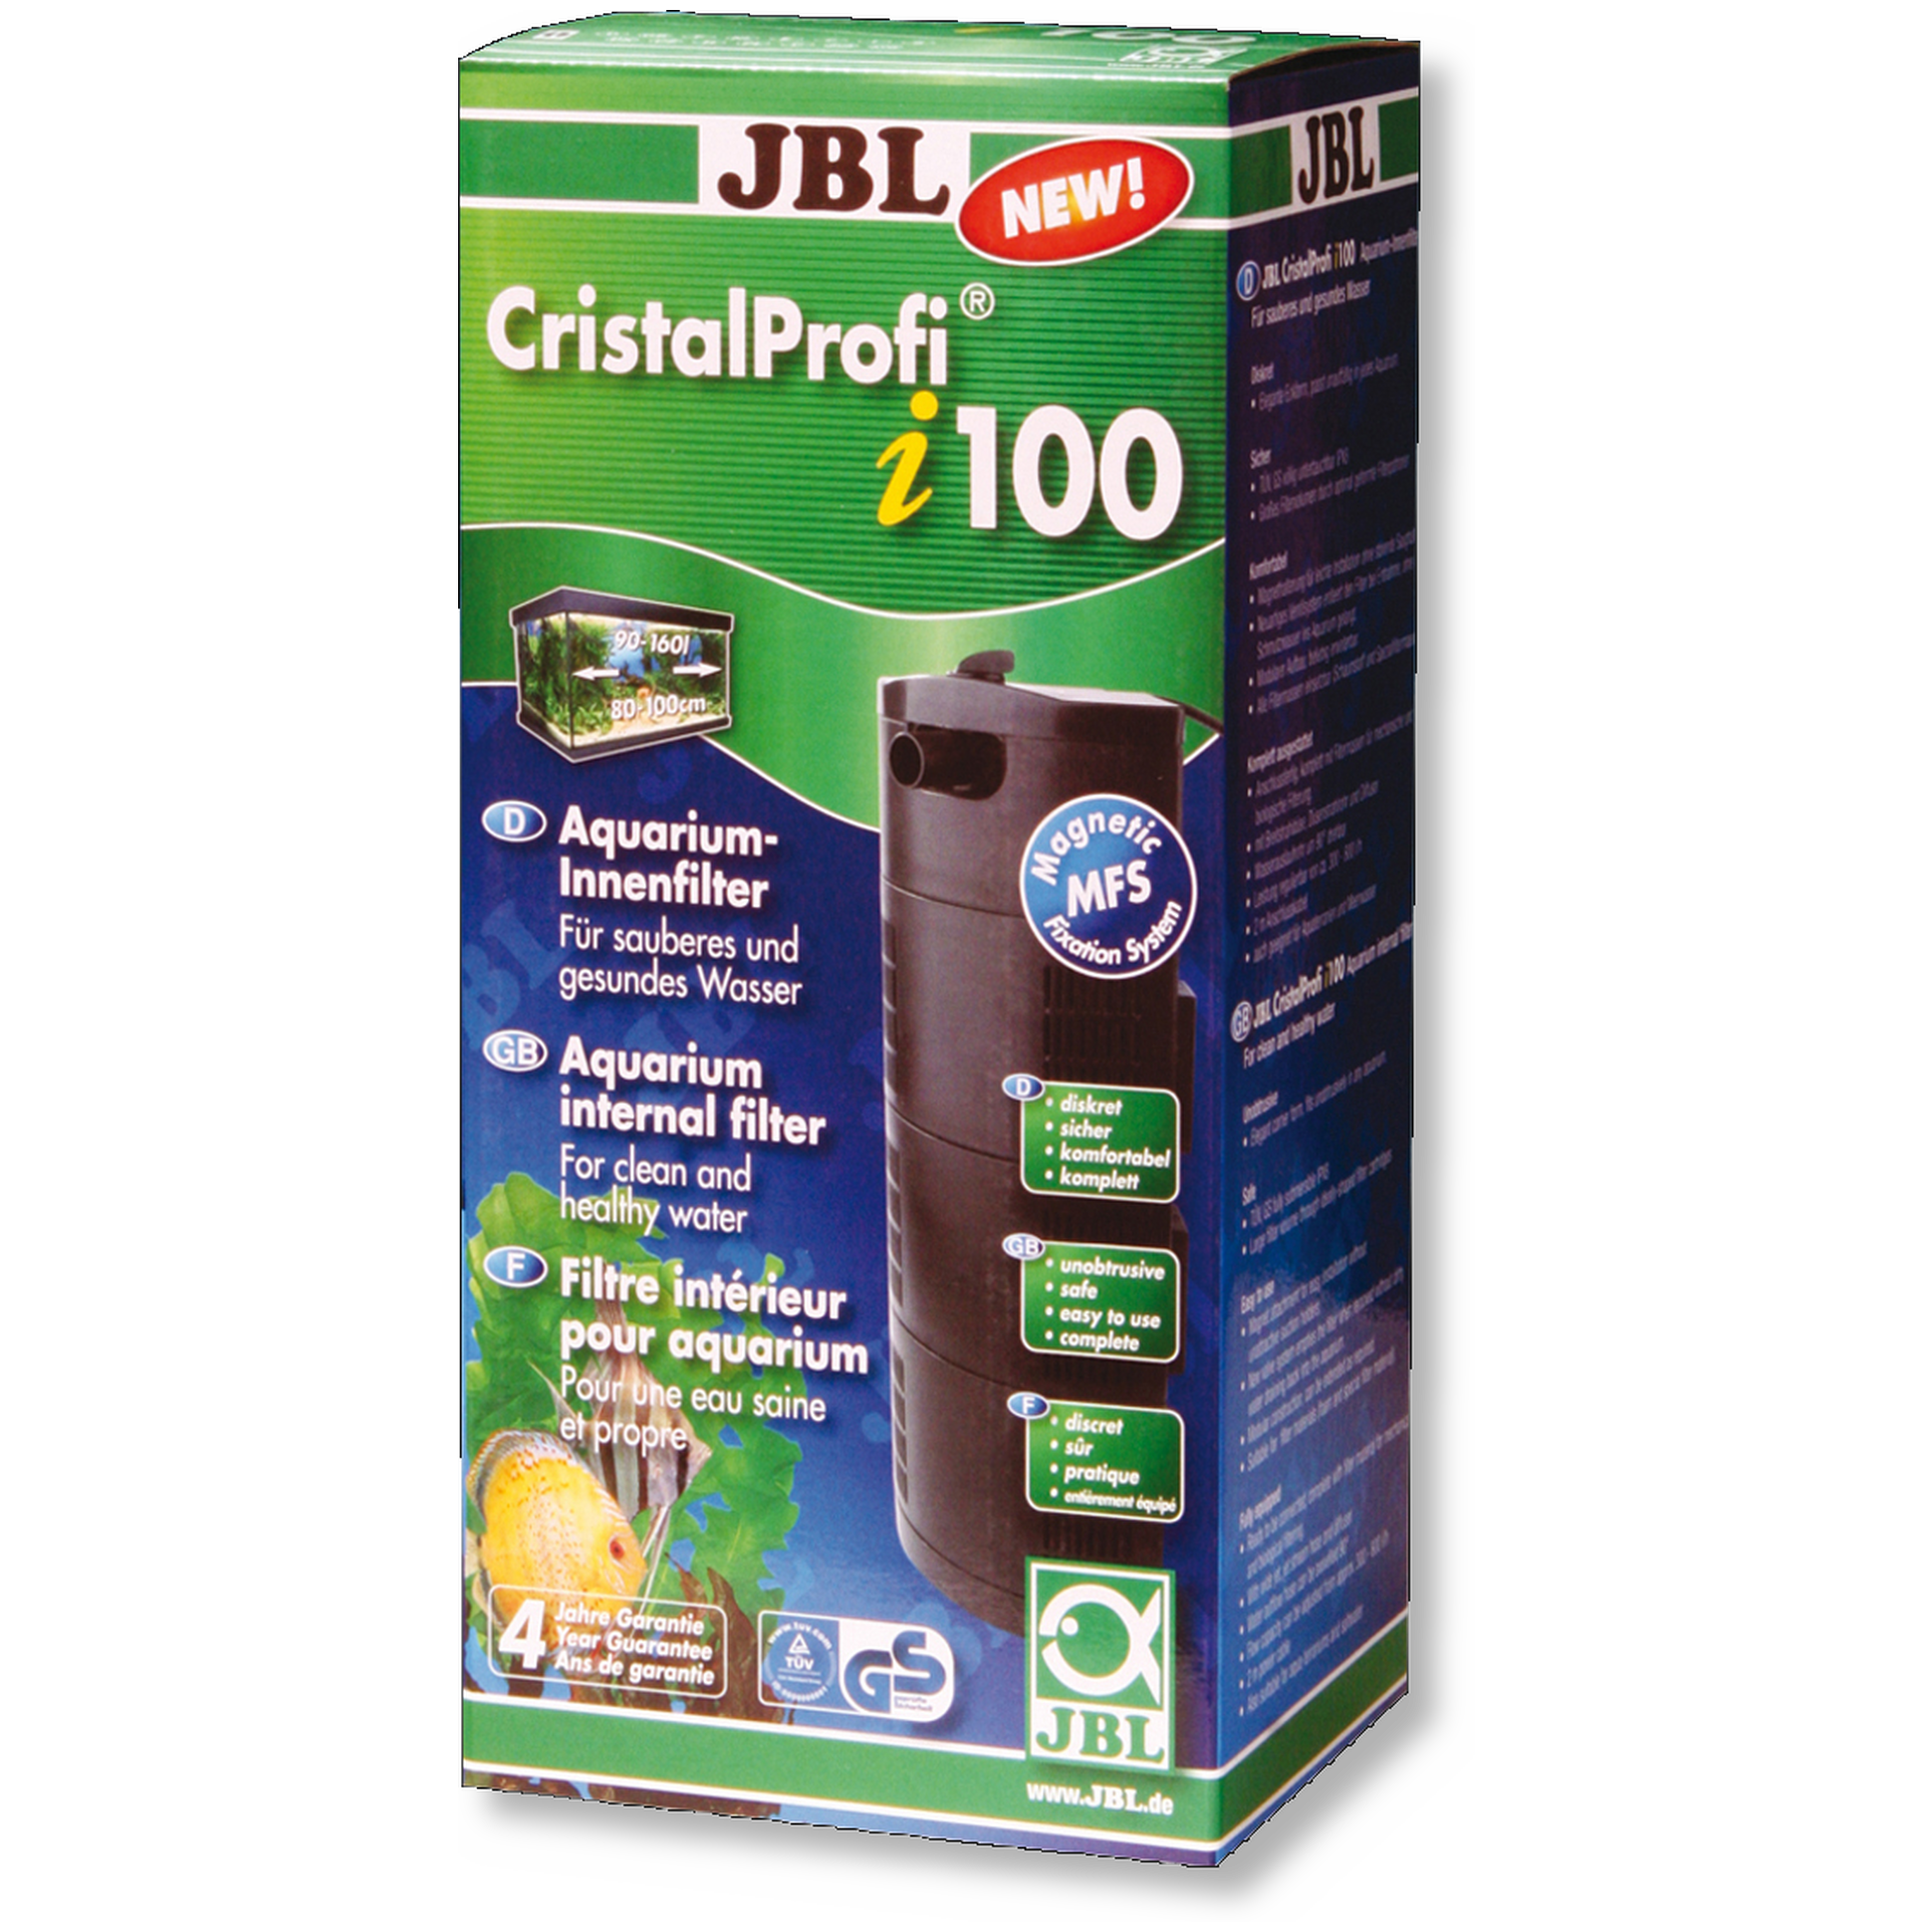 JBL CristalProfi i100